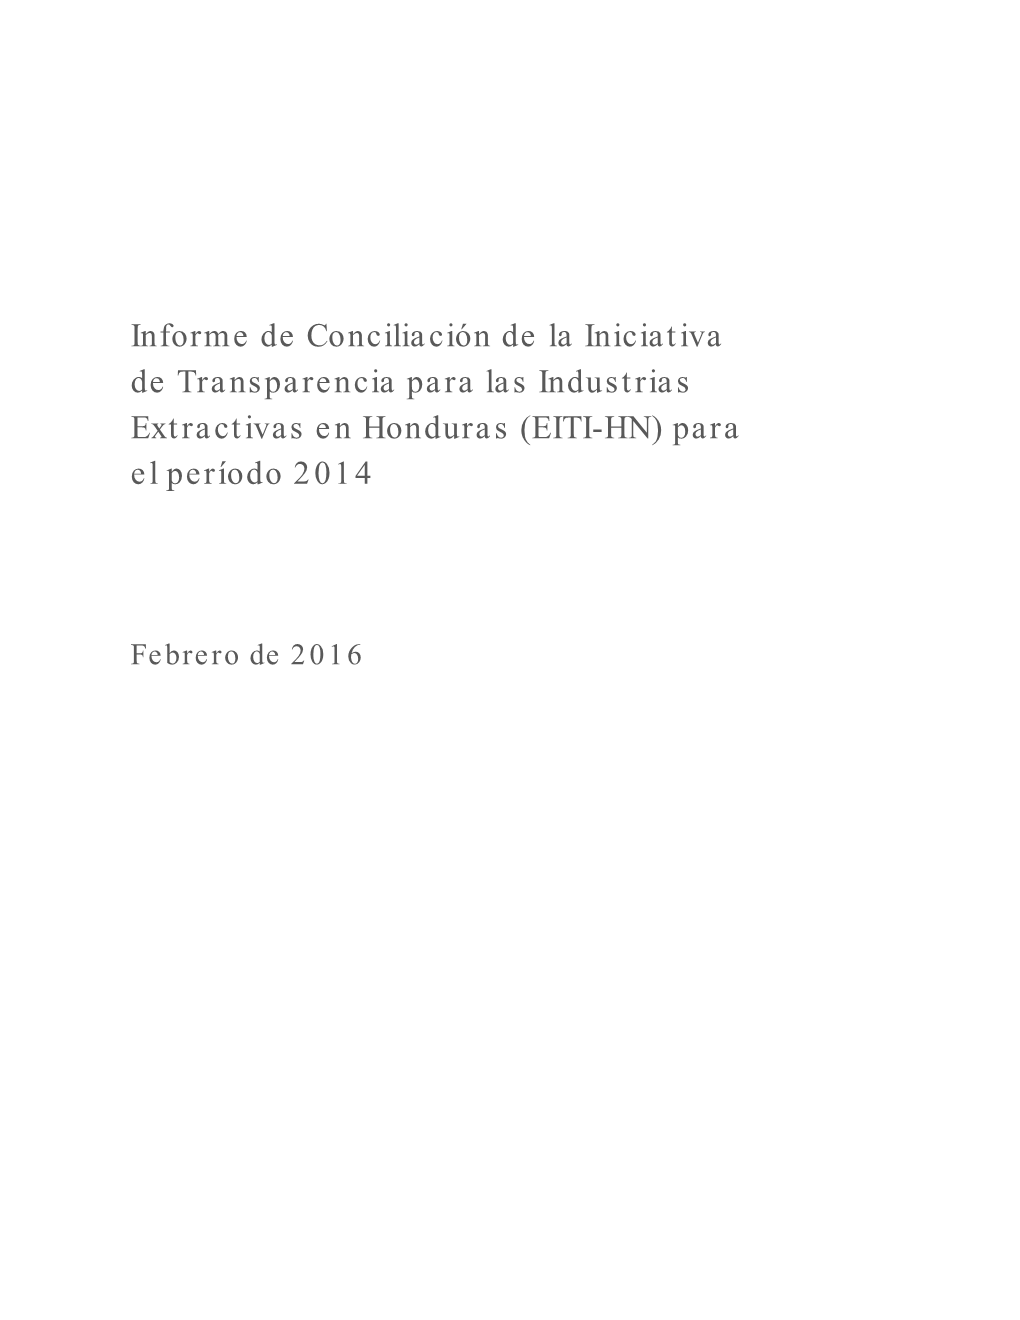 Informe EITI 2014